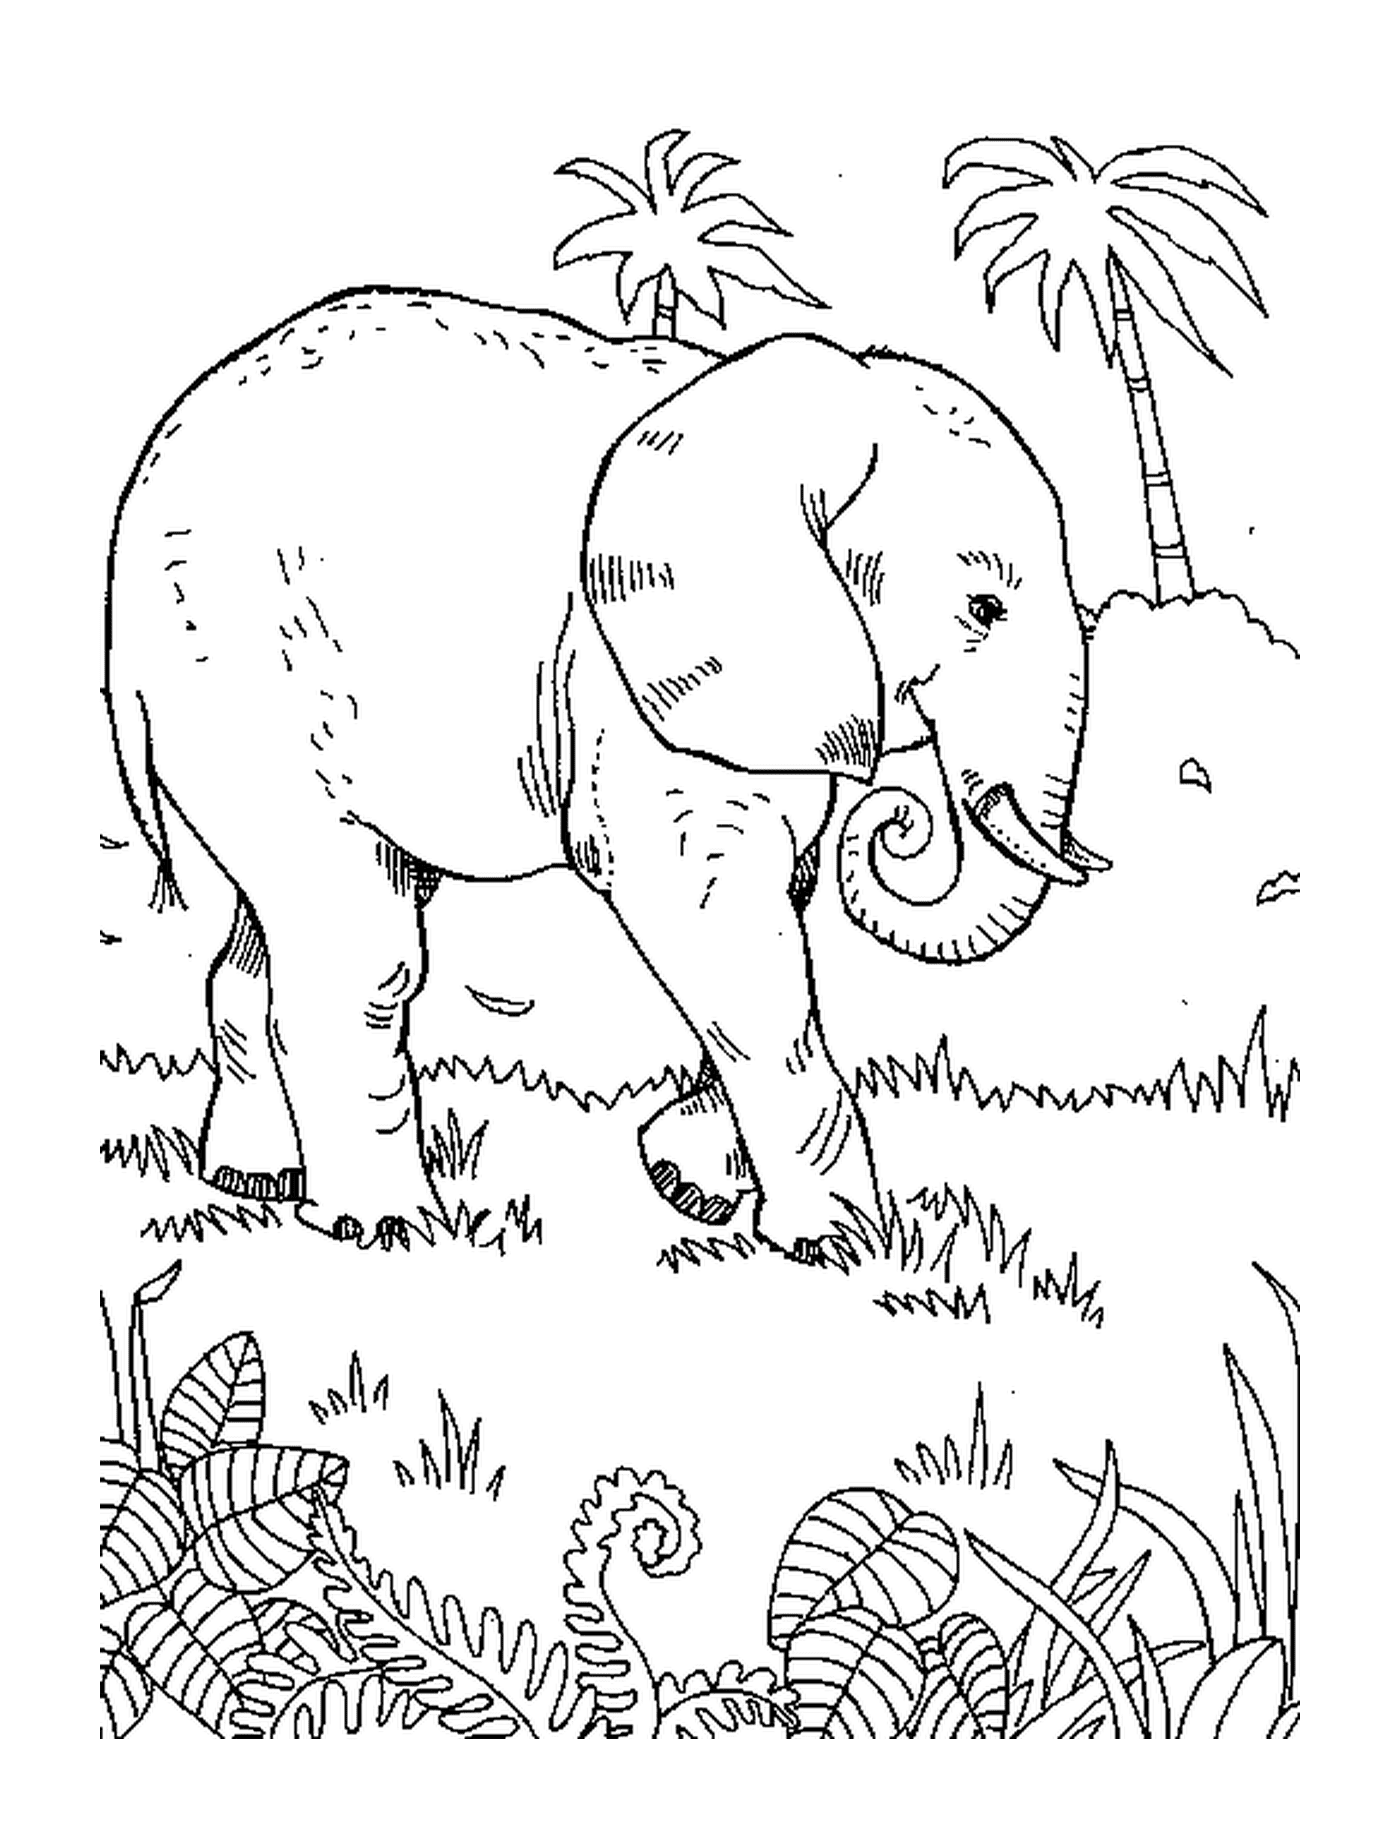  हाथी घास के पास खजूर के पेड़ के पास चलता है 